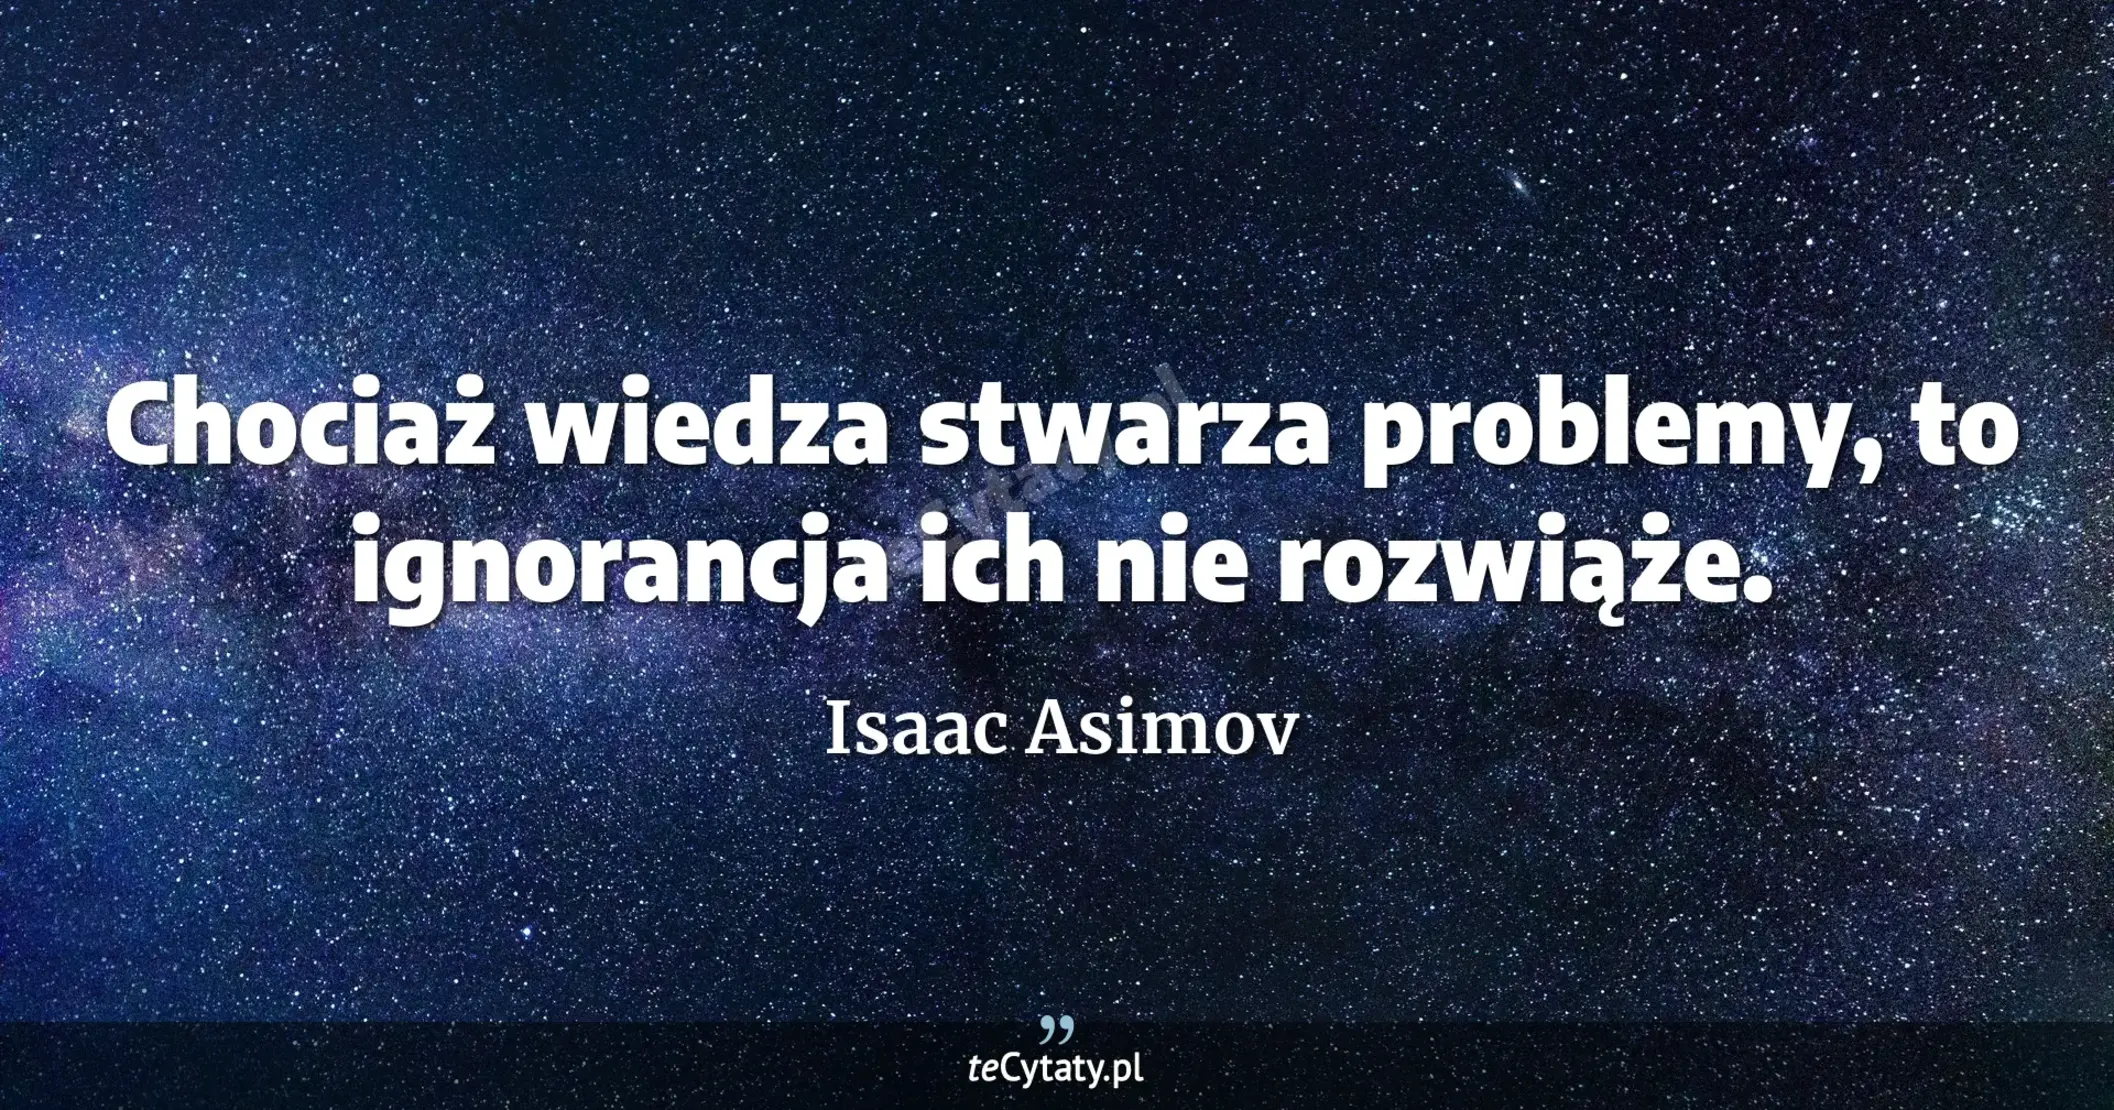 Chociaż wiedza stwarza problemy, to ignorancja ich nie rozwiąże. - Isaac Asimov